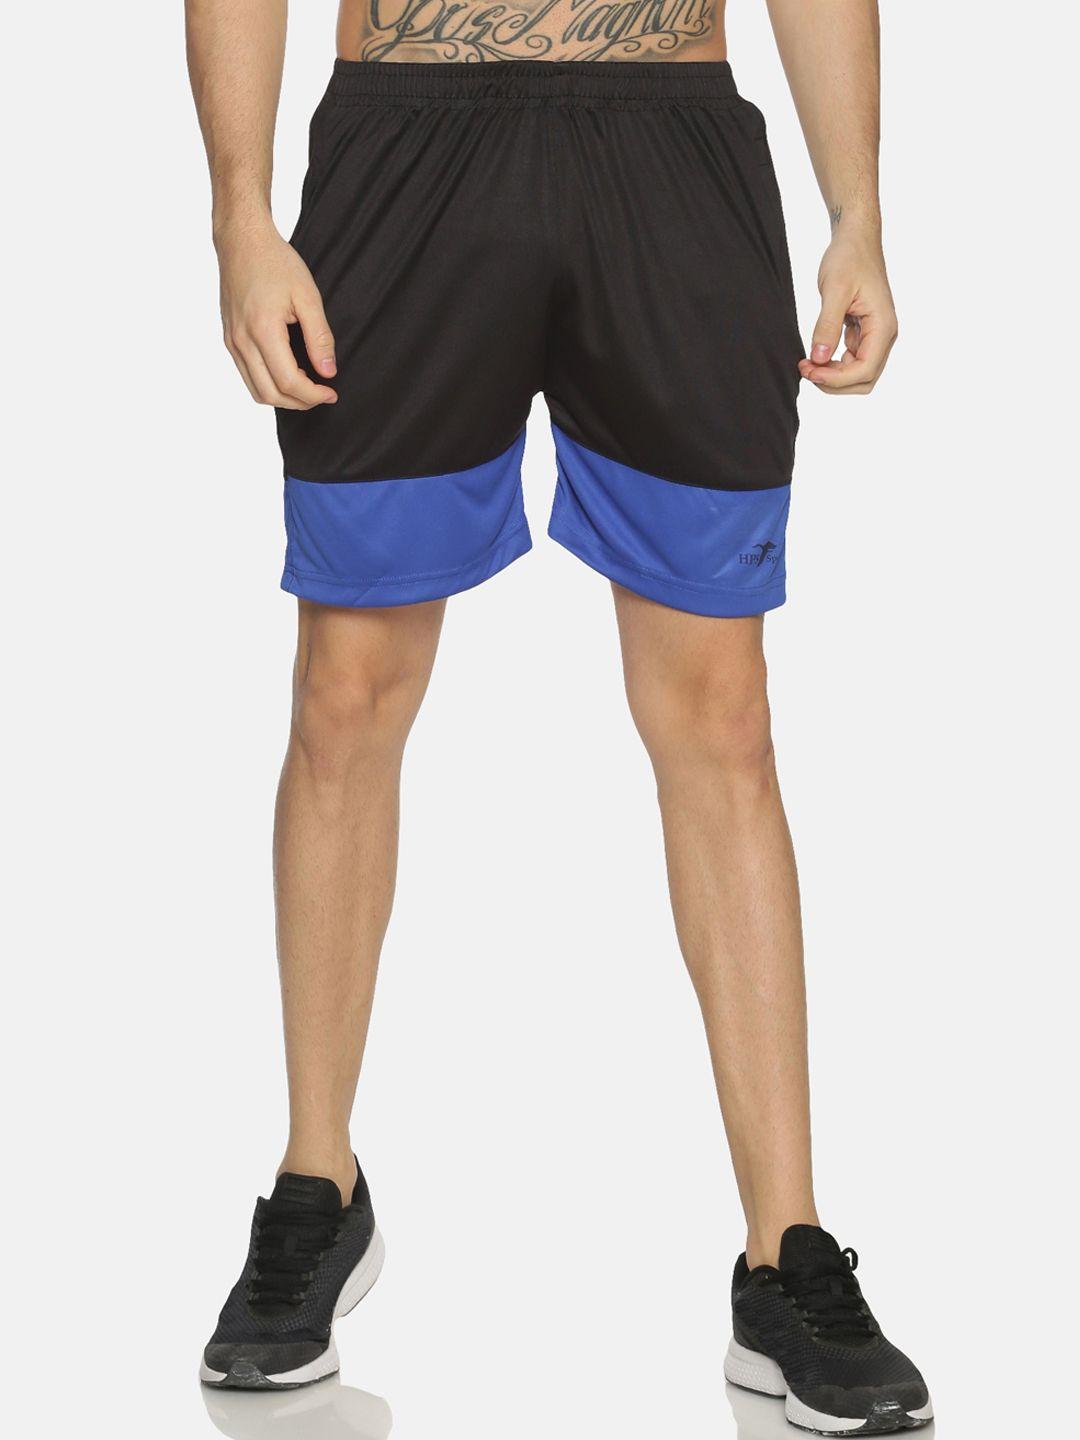 hps sports men blue & black colourblocked slim fit sports shorts